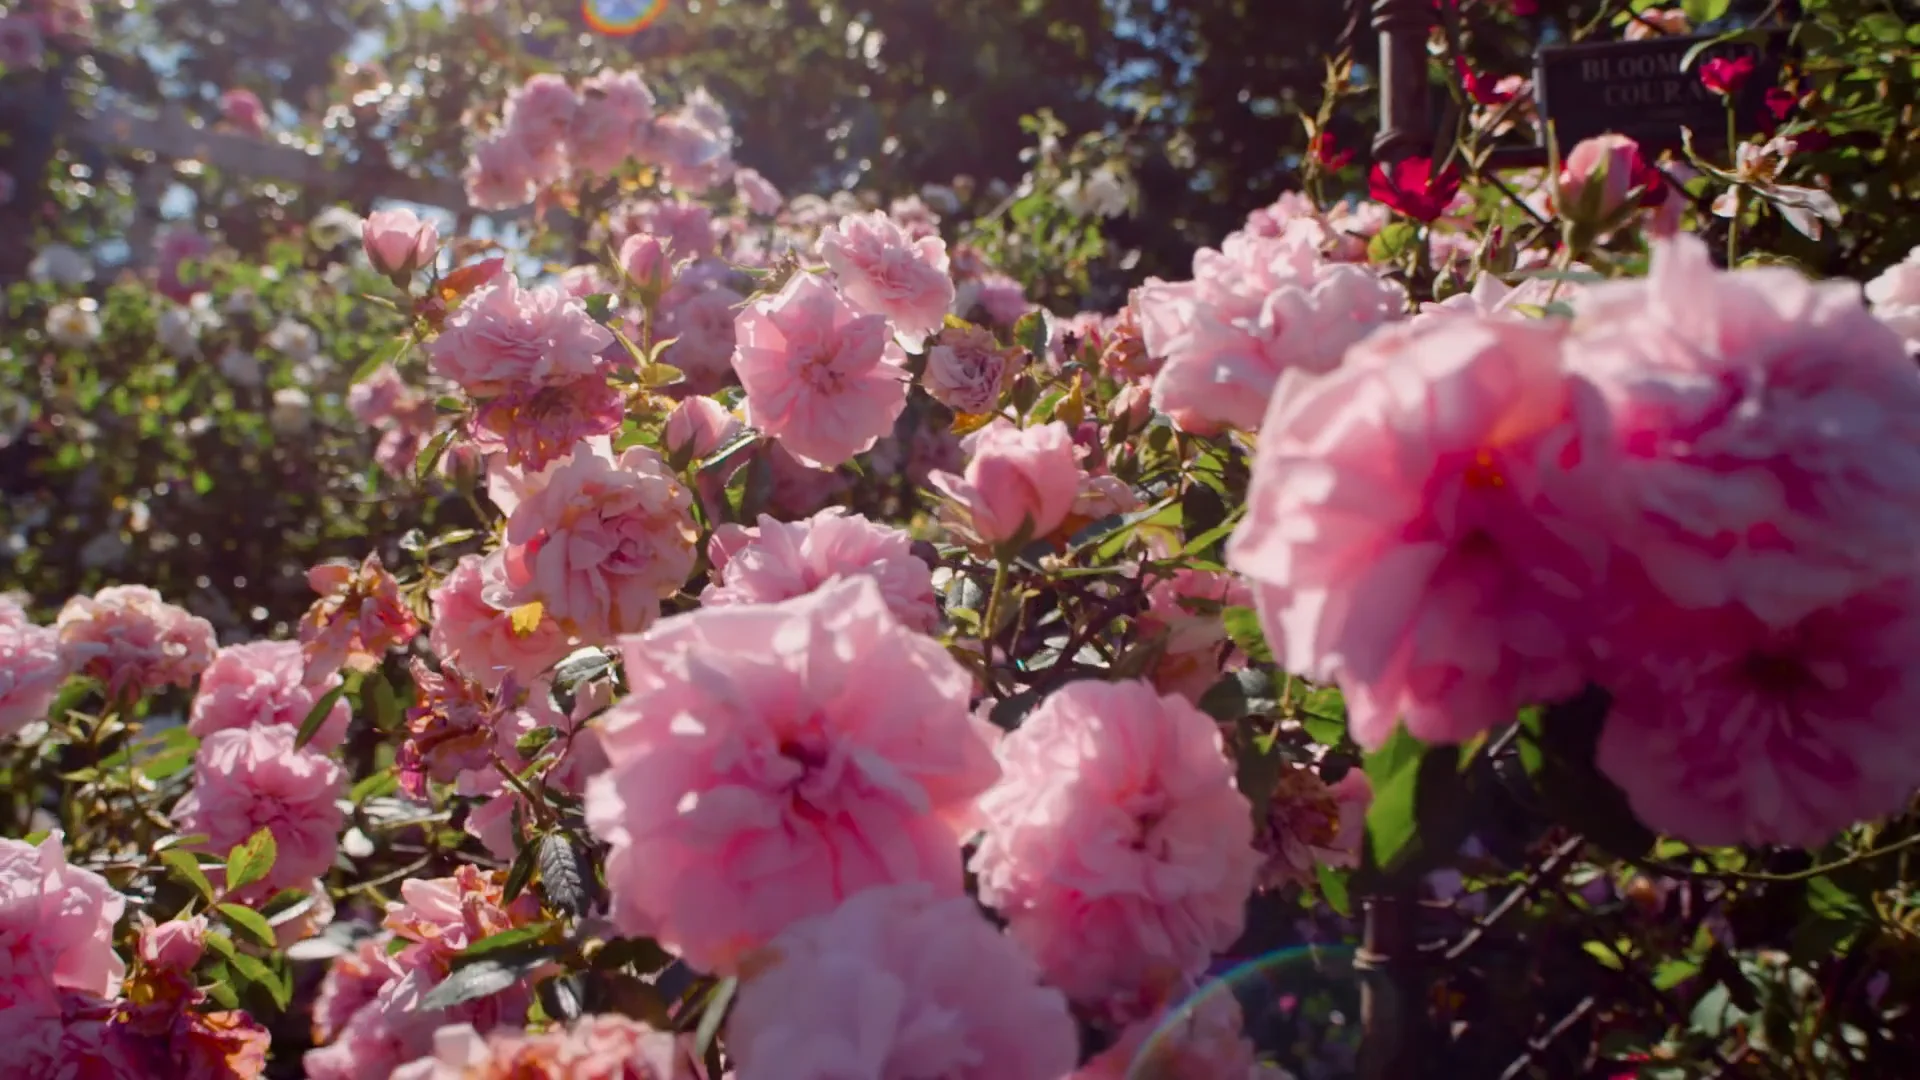 Chandon - Garden Spritz on Vimeo